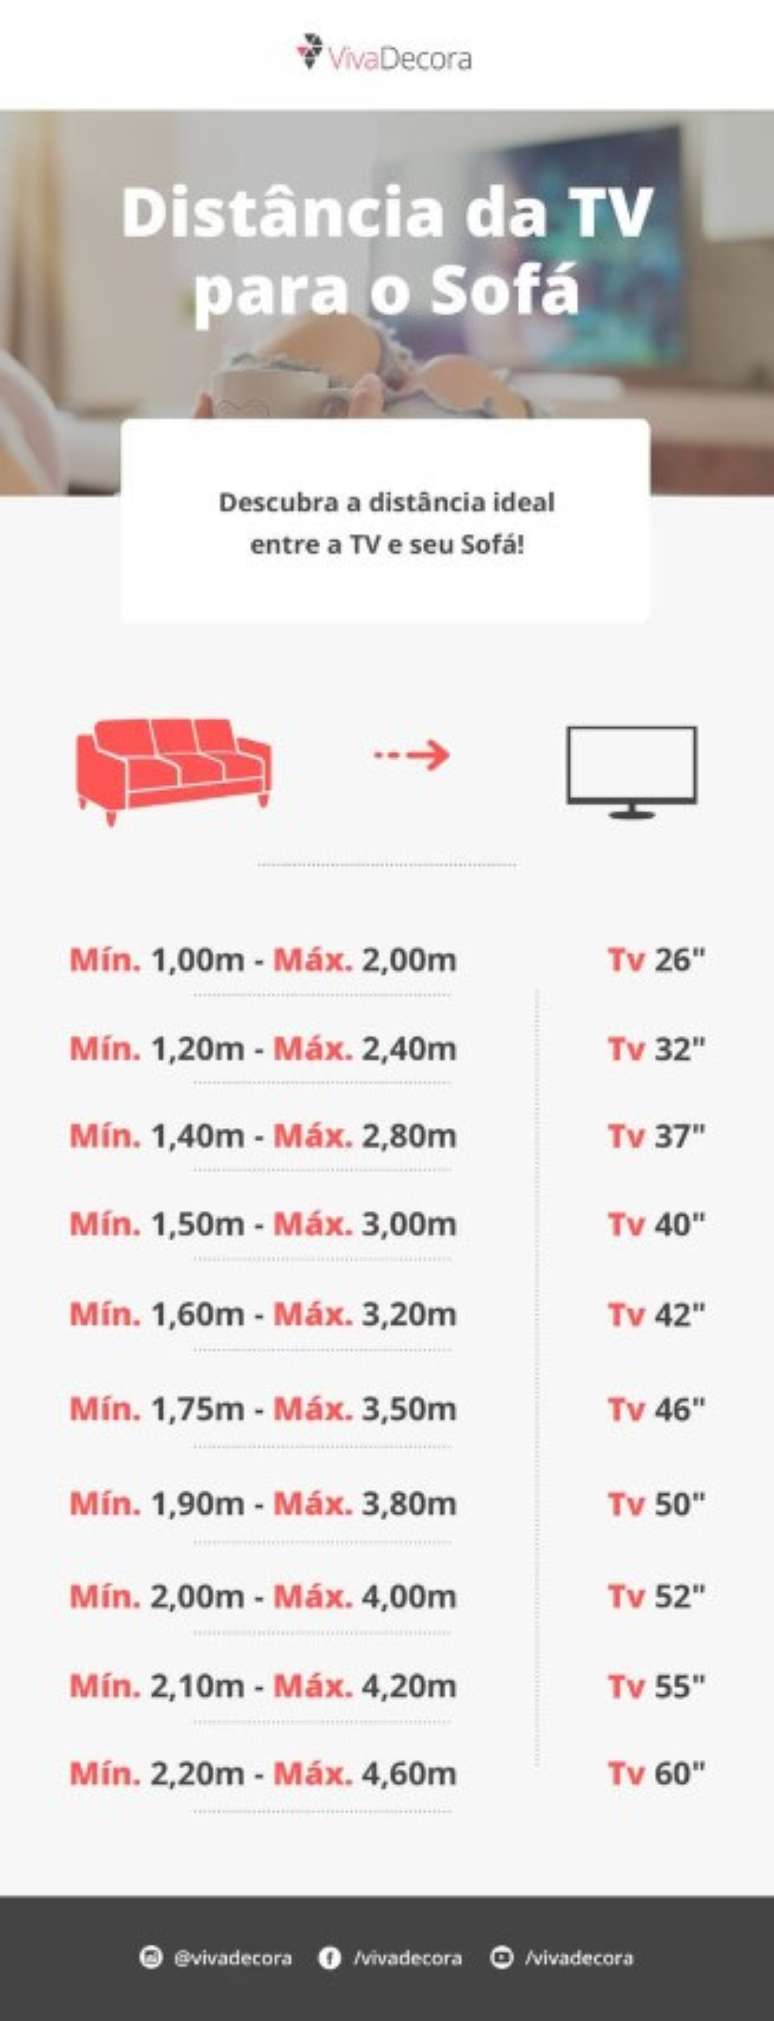 11. Distância ideal entre TV e sofá para salas de TV